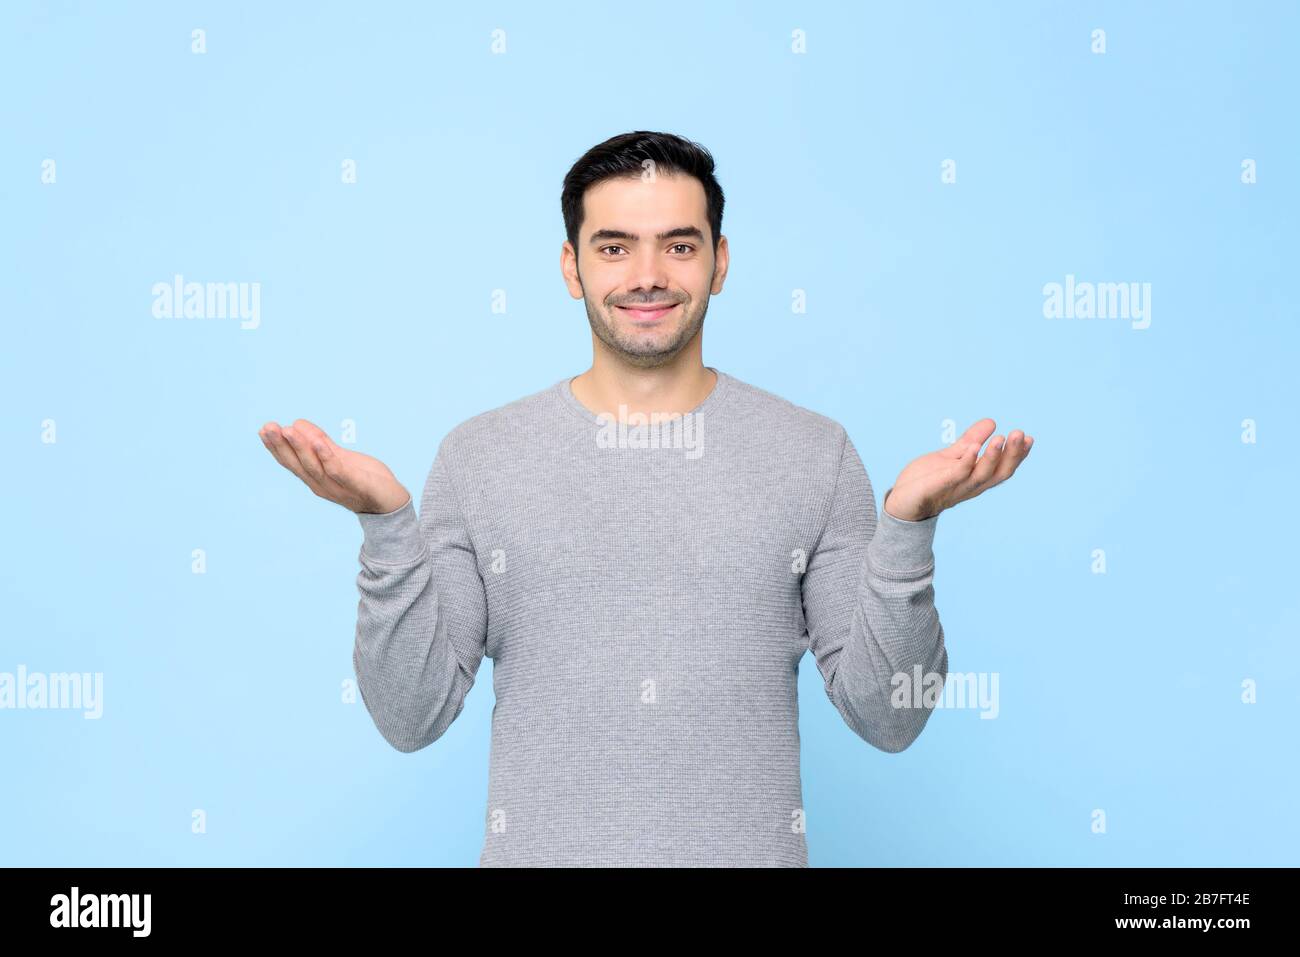 Demi-portrait du corps de l'homme souriant dans un t-shirt gris avec un geste de main ouvert dans un fond de studio bleu clair Banque D'Images